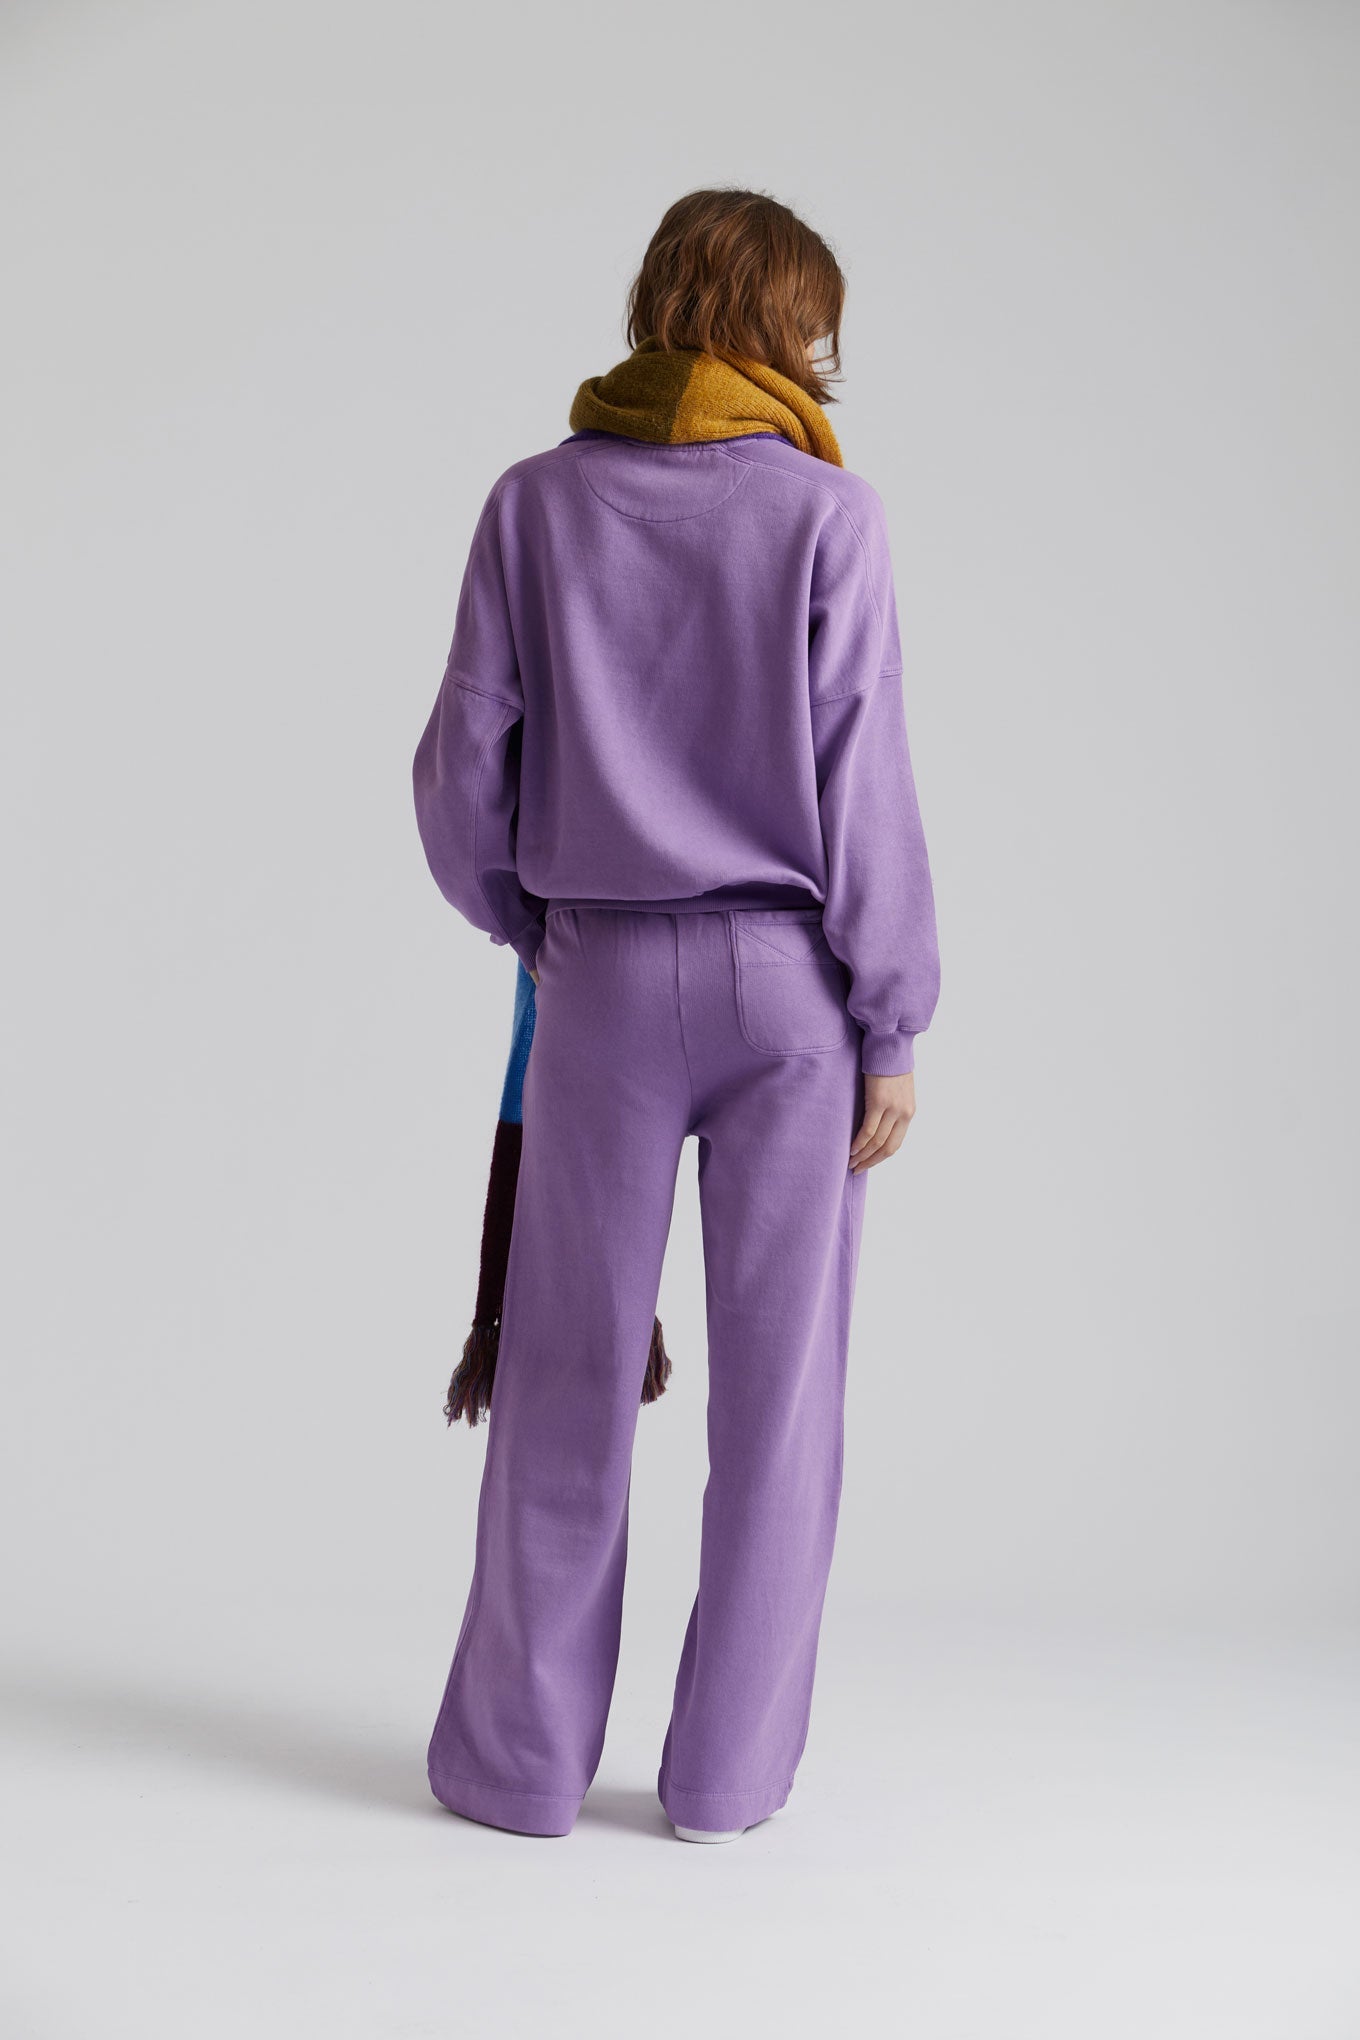 Pantalon de jogging large violet SOLEIL en coton 100% biologique de Komodo